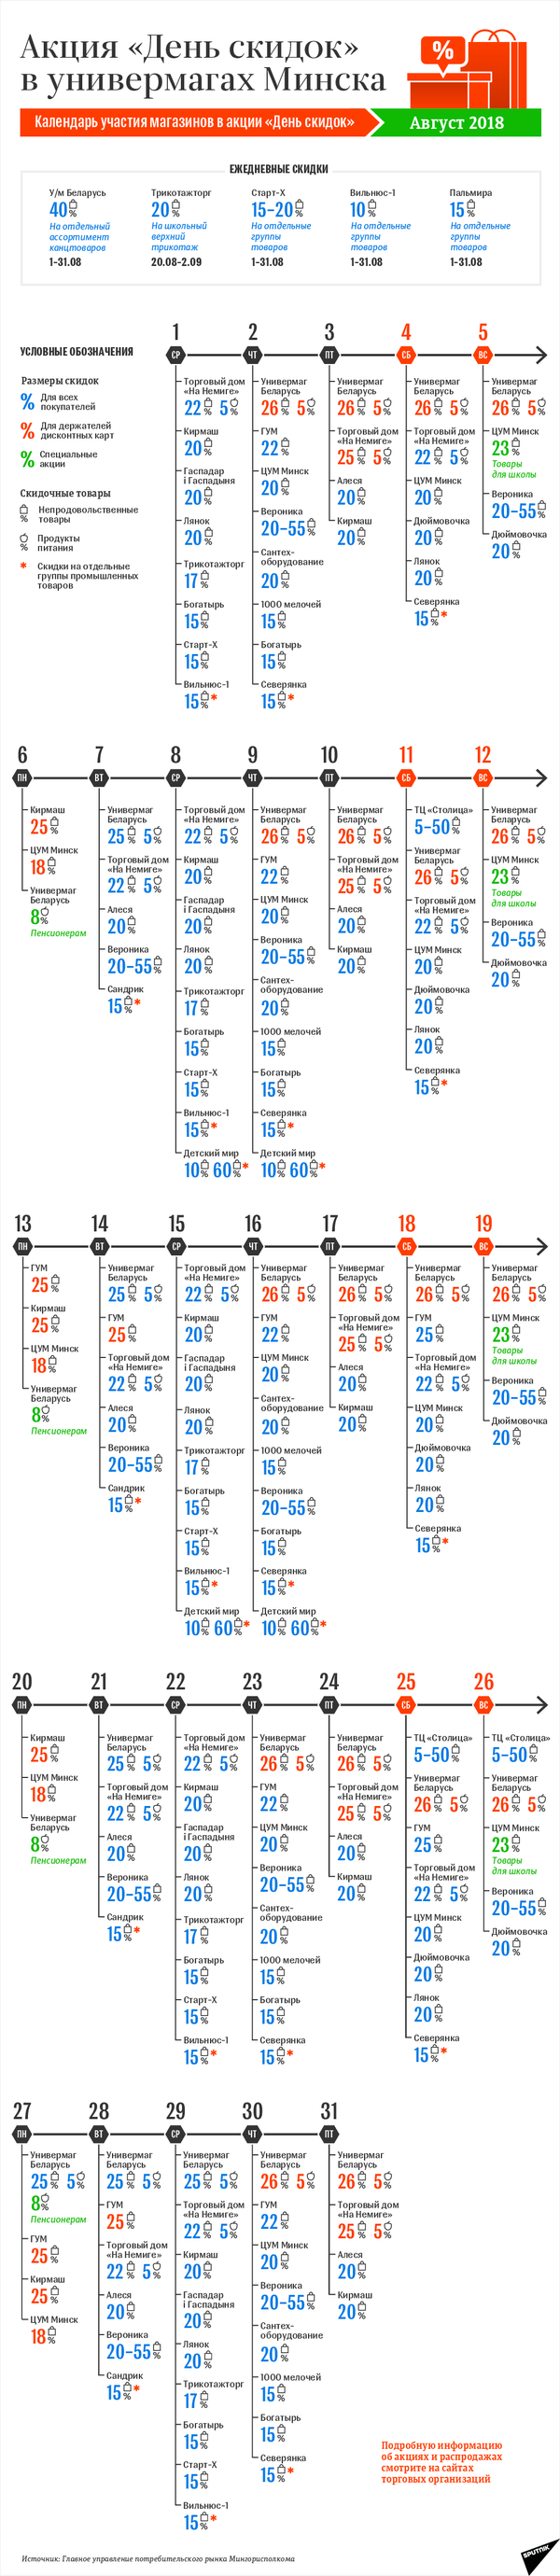 Календарь акции День скидок в Минске: август-2018 – инфографика на sputnik.by - Sputnik Беларусь